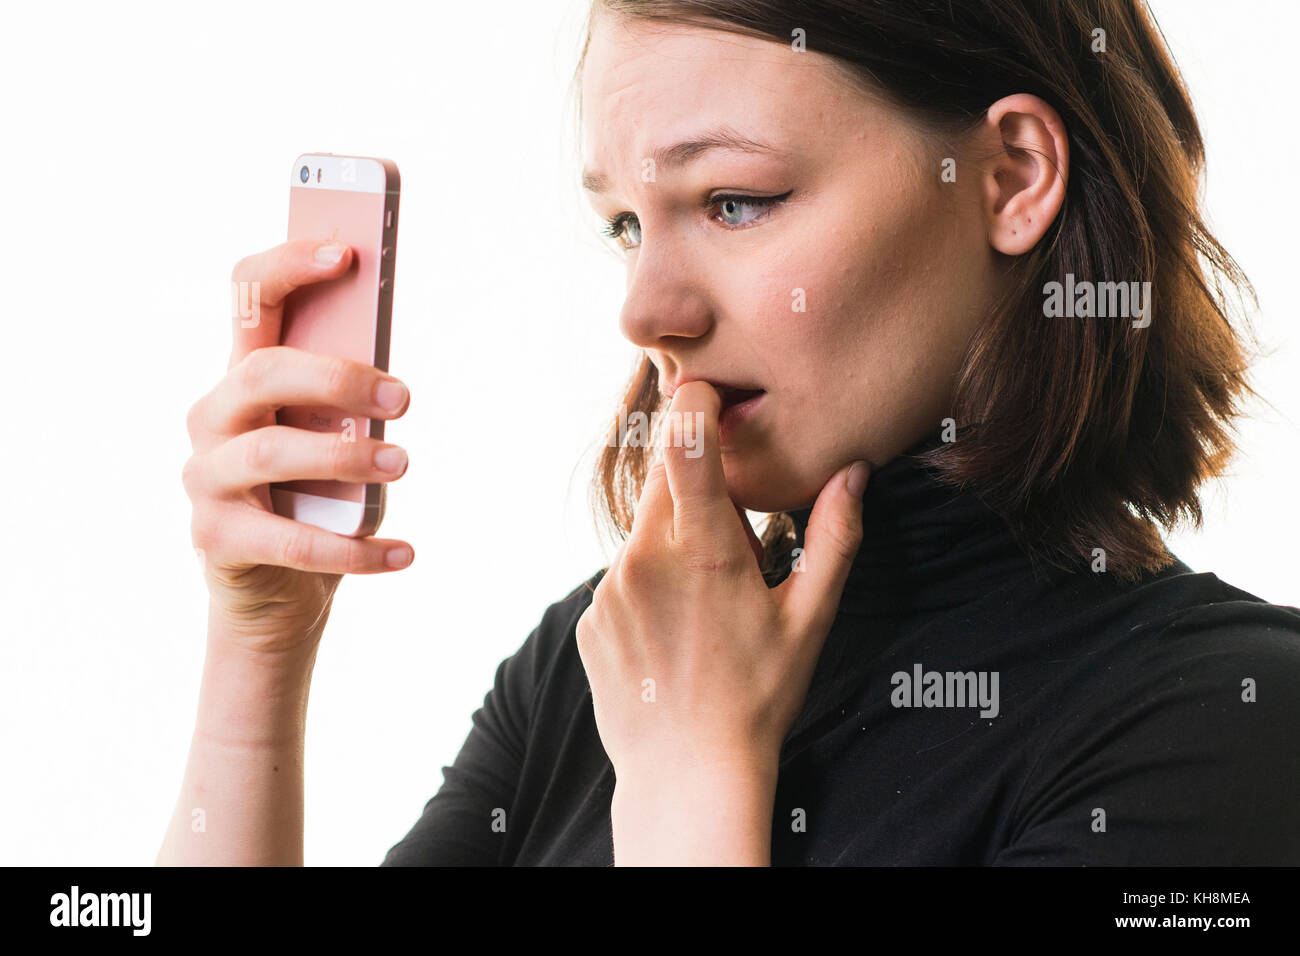 Hacking und Cyber Mobbing: Eine junge Braunhaarige kaukasischen teenage Mädchen auf ihrem Mobiltelefon, Smartphone, Handy, besorgt suchen, verwirrt, betroffen ist, durch den Inhalt der Nachricht, die Sie sehen, Großbritannien Stockfoto